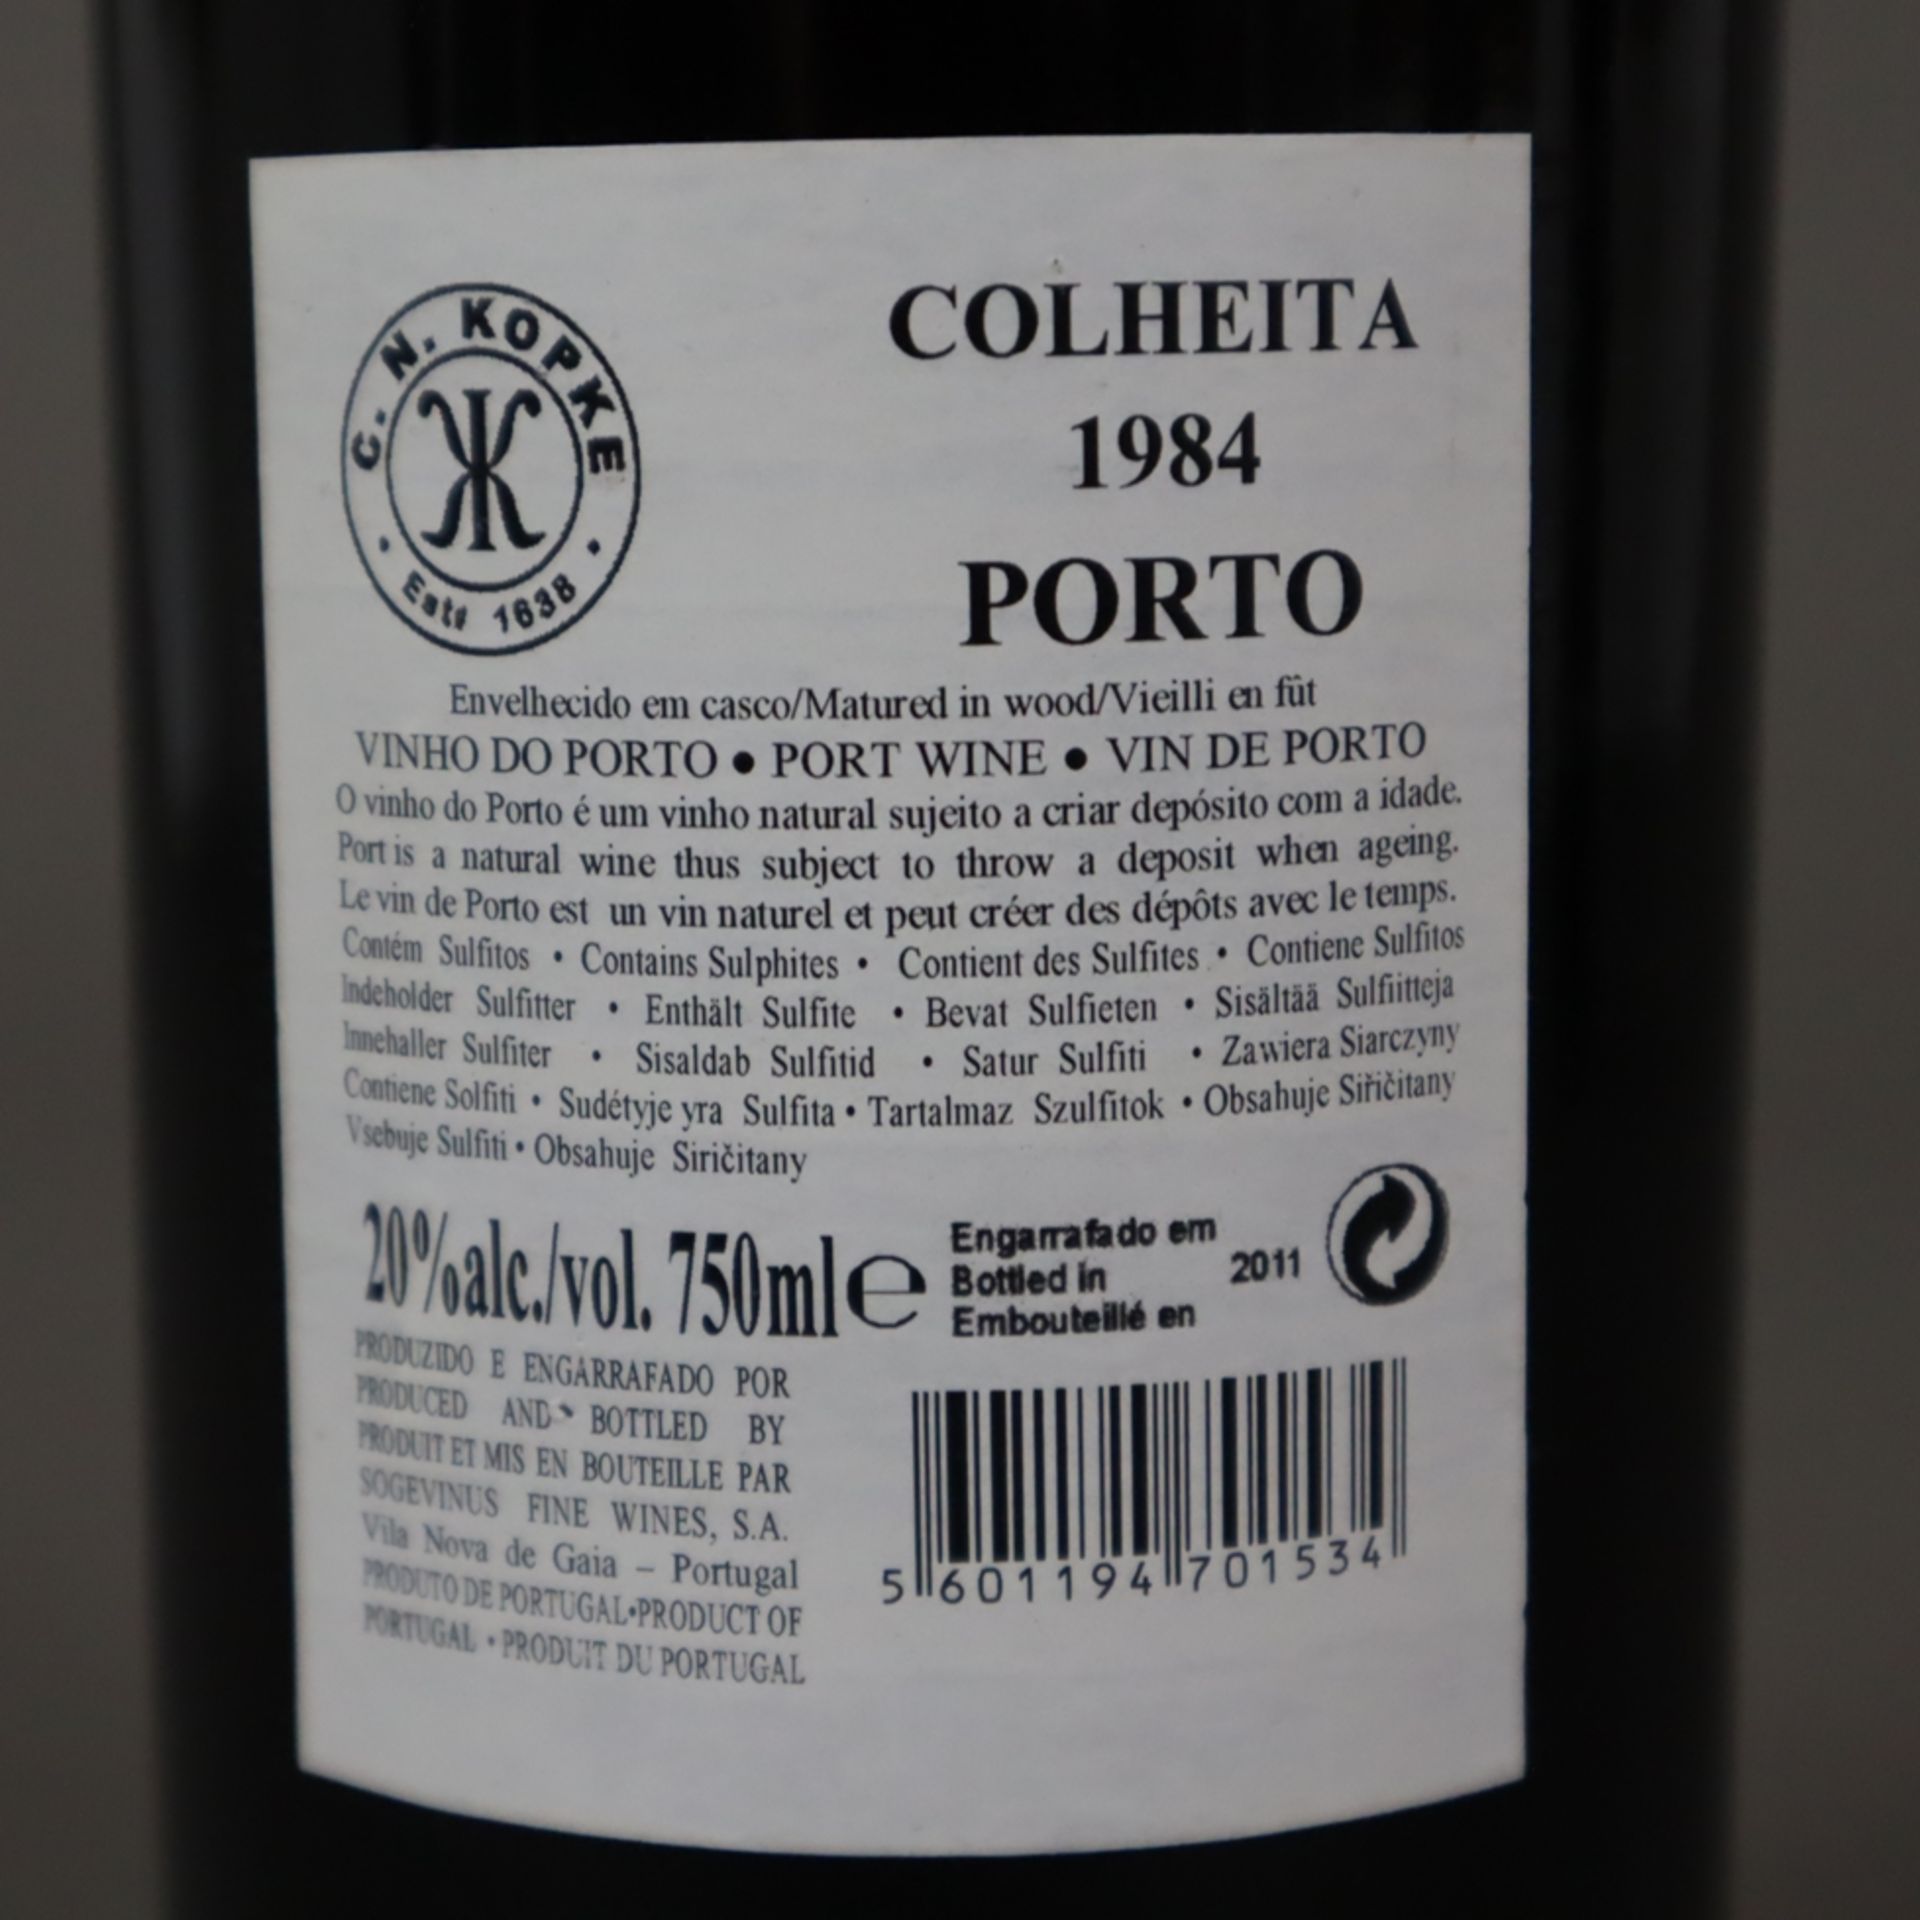 Portwein - Porto Kopke Colheita, Jahrgang 1984, 0,7 Liter, Wachs an der Kapsel leicht beschädigt - Image 4 of 4